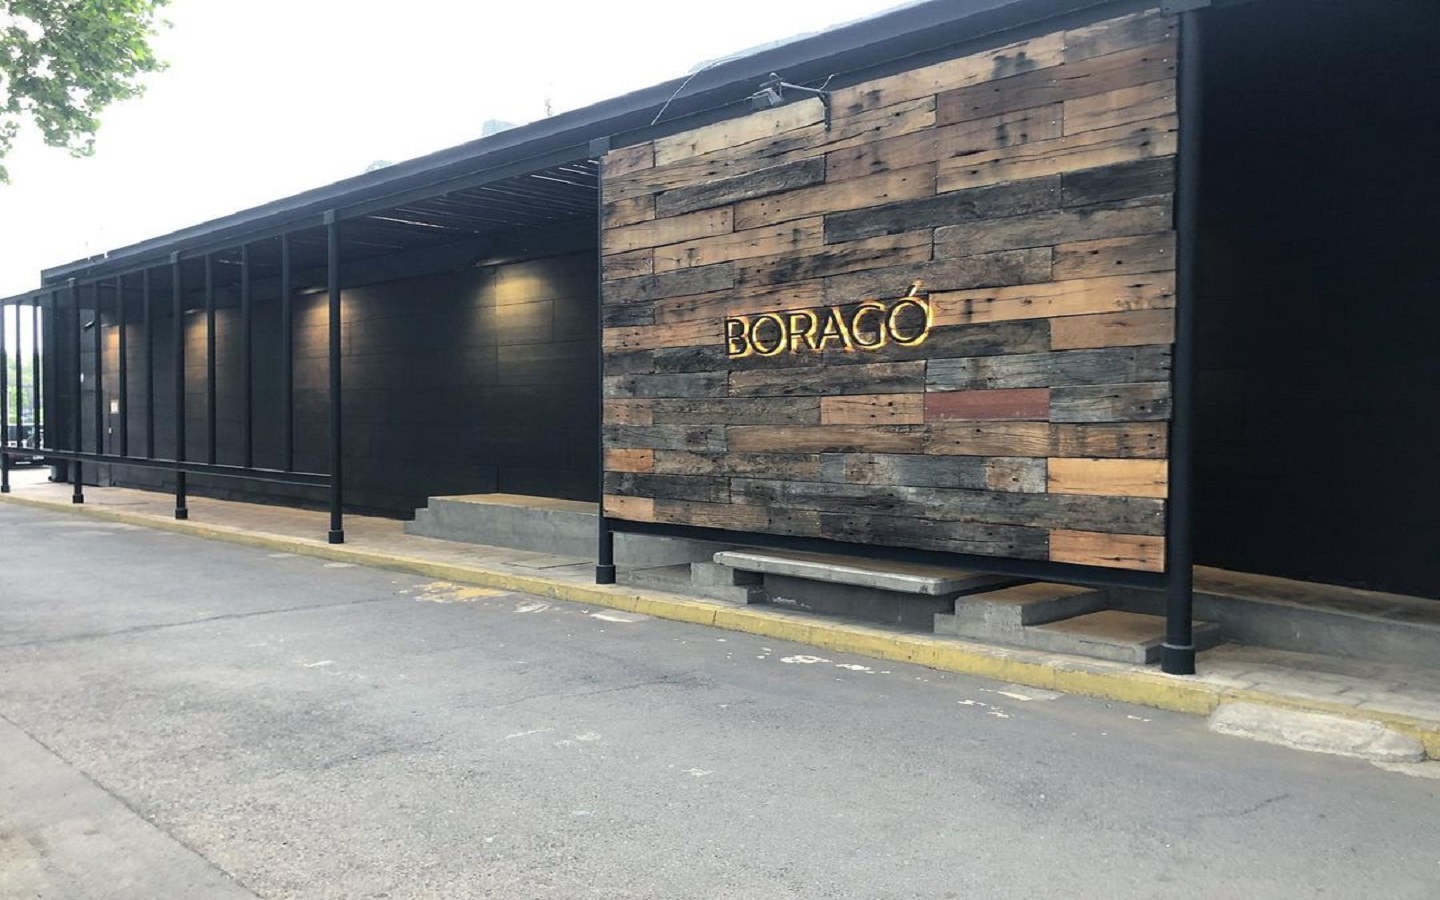 Restaurante Boragó, te faz viver experiências diferentes todos os dias